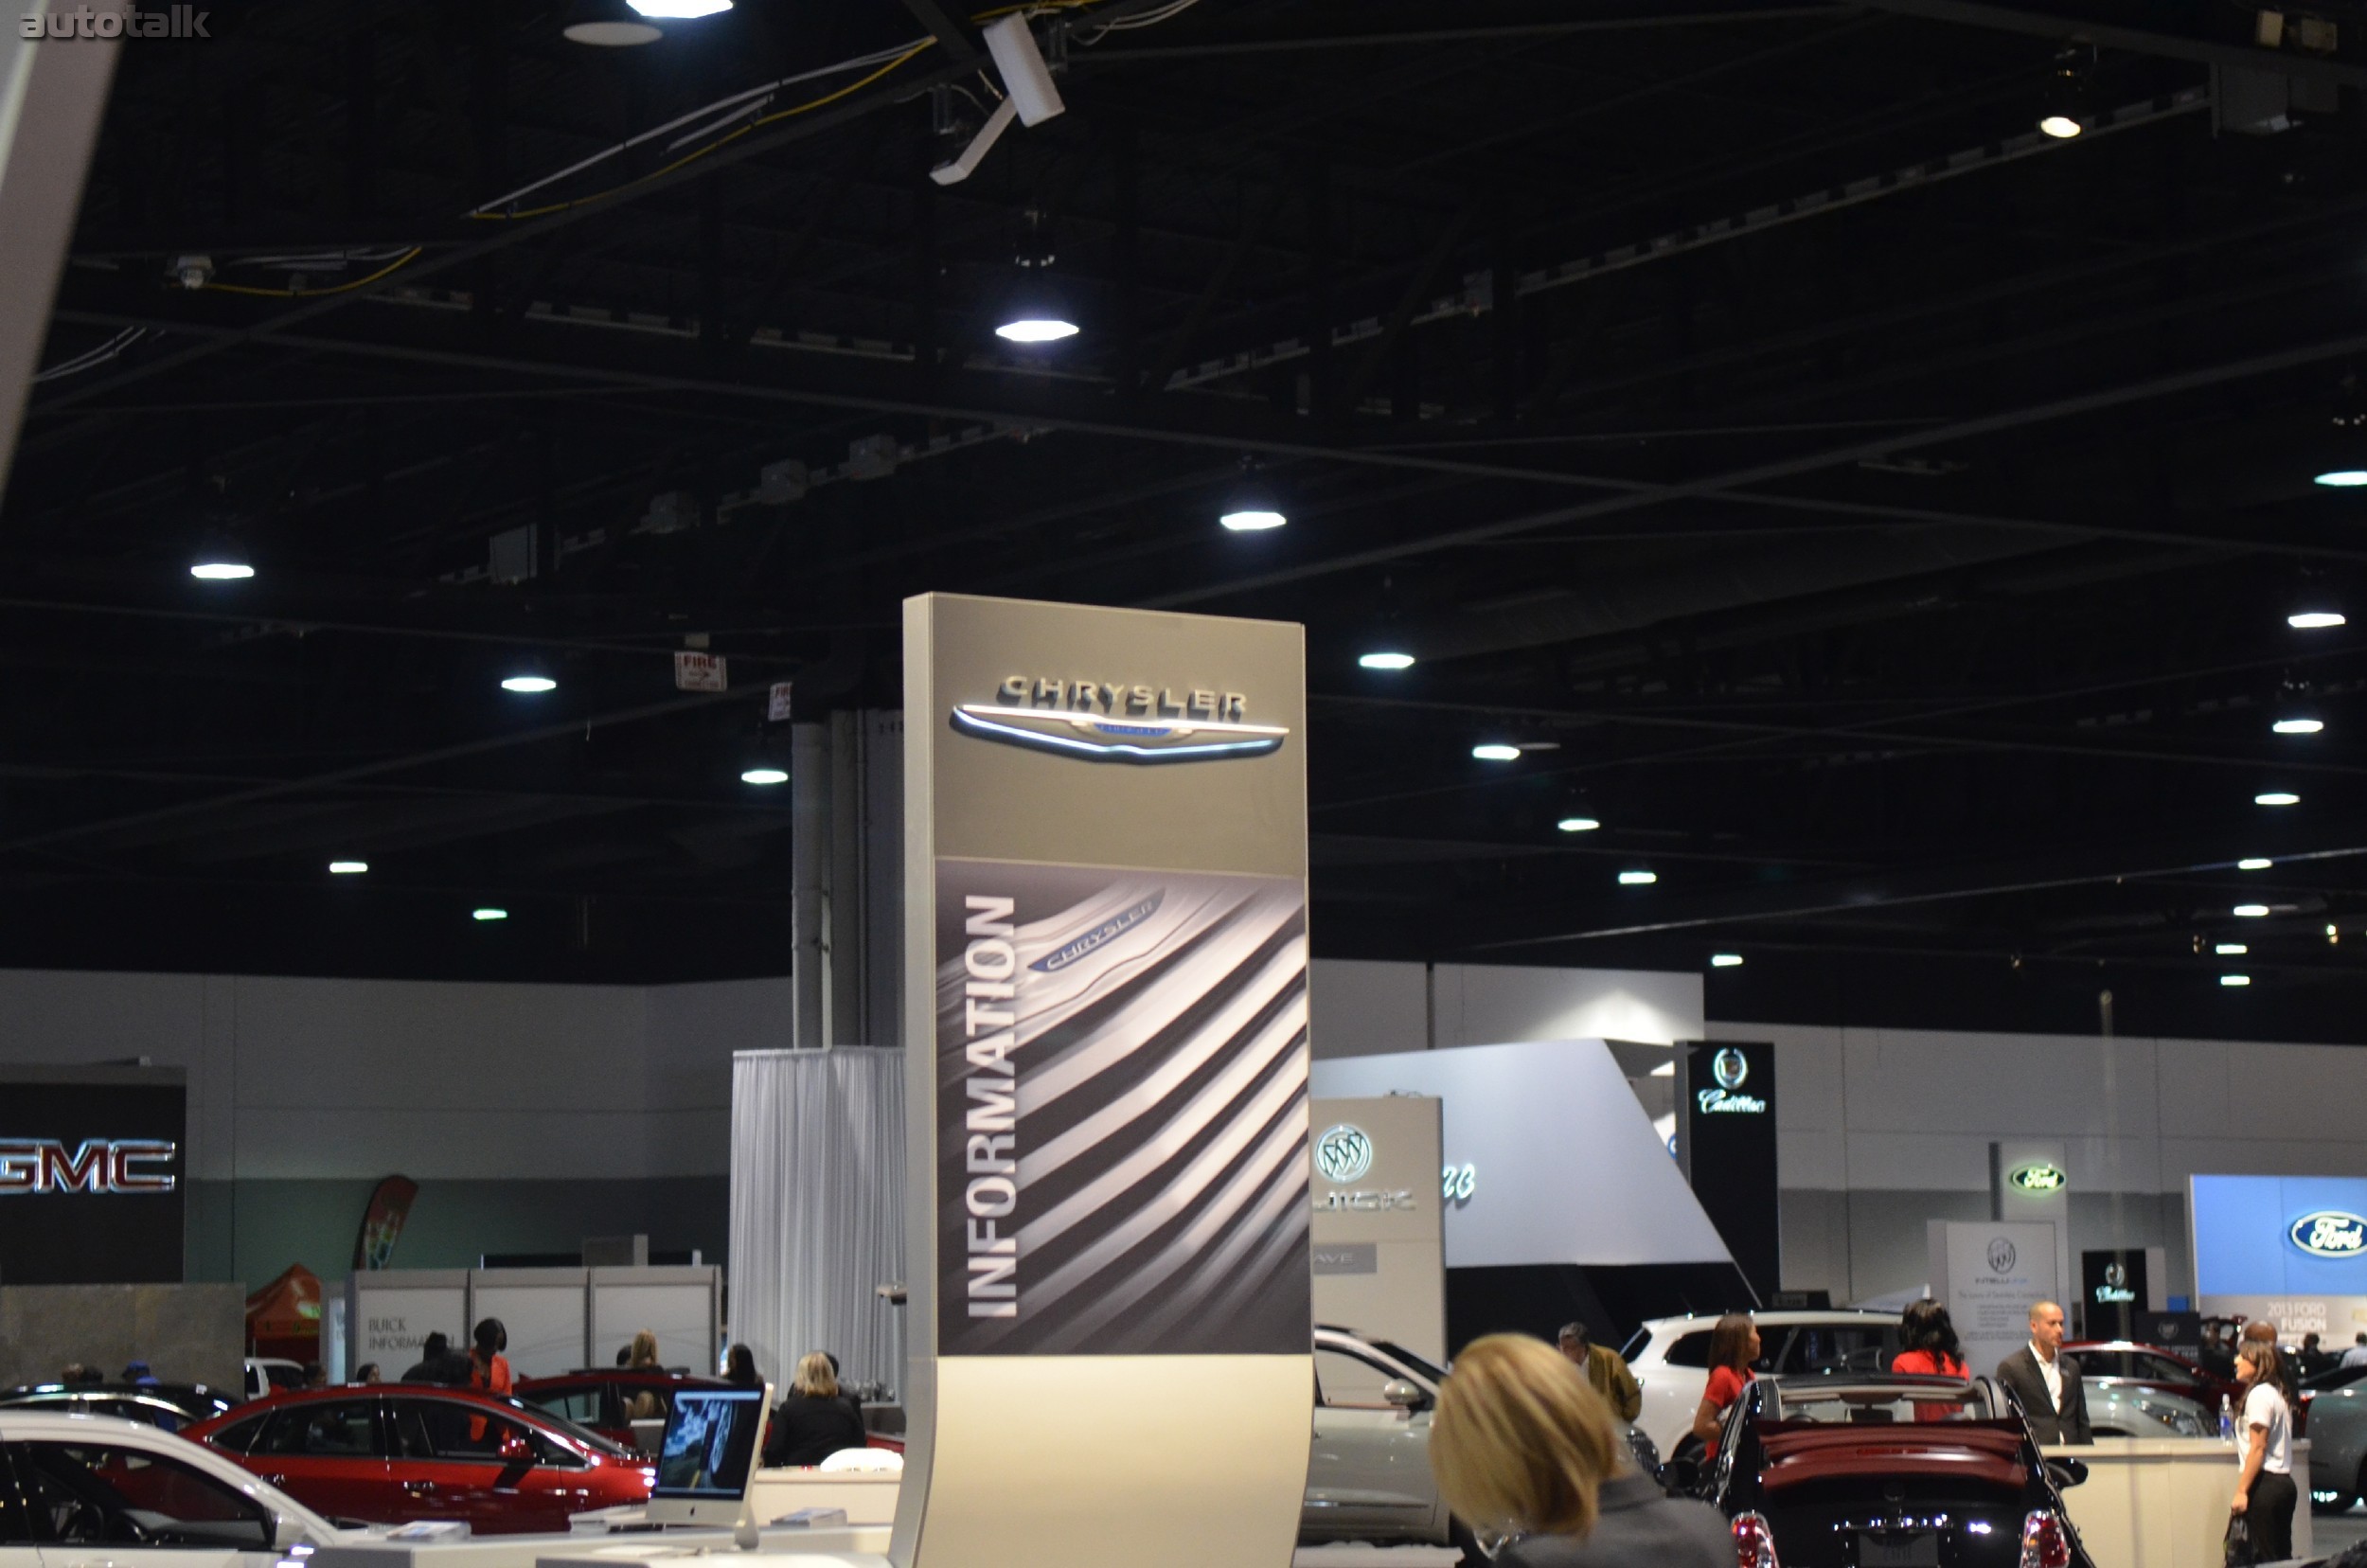 Chrysler at 2013 Atlanta Auto Show